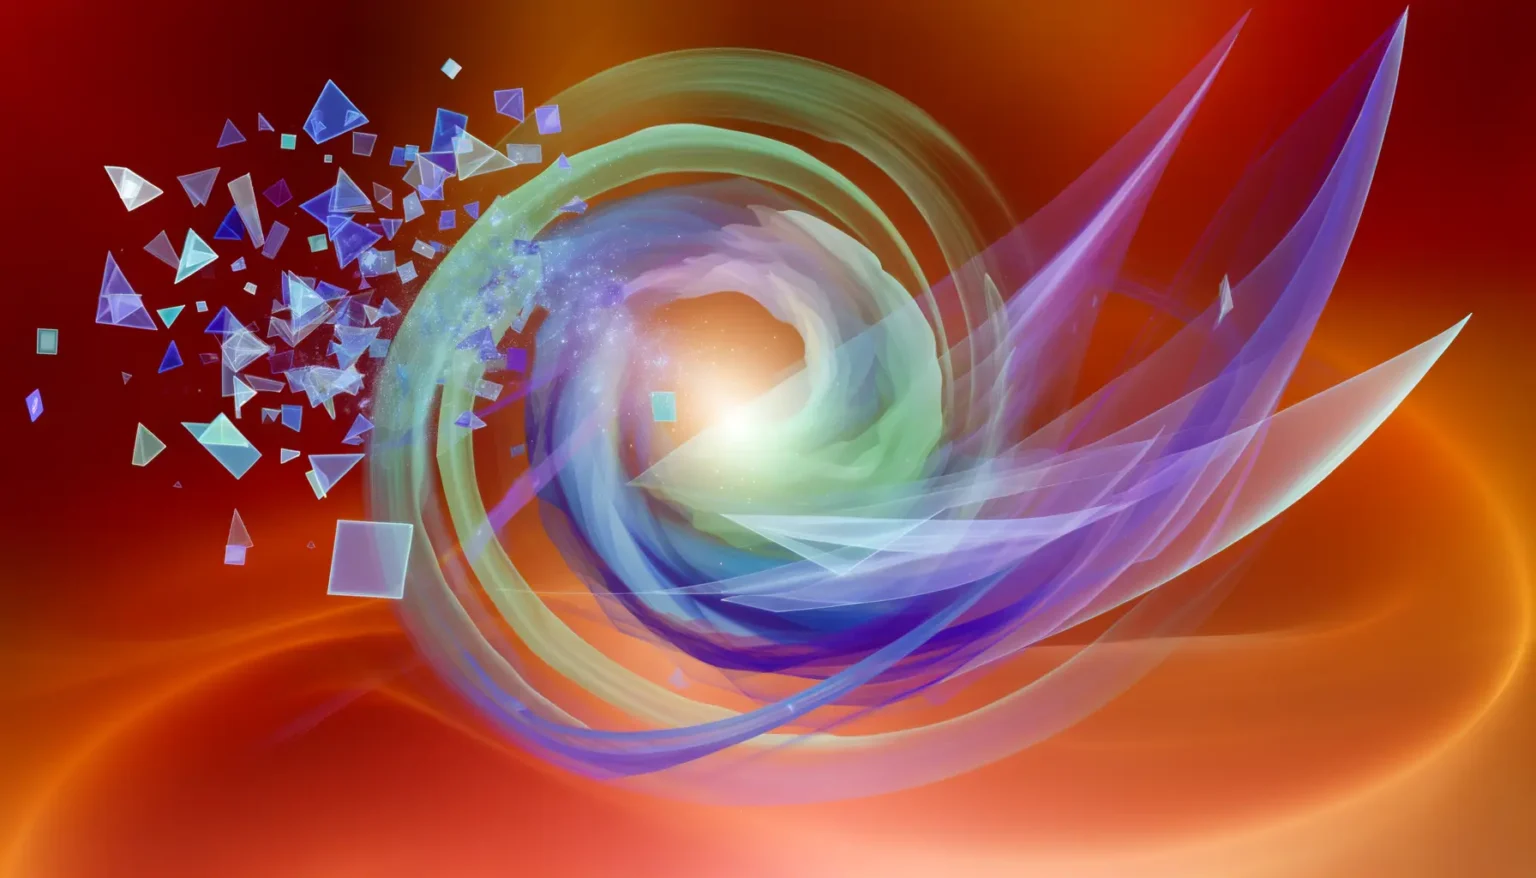 Abstrakte Darstellung eines Wirbels mit mehreren Schichten farbiger, transparenter Wellen und zerbrochenen geometrischen Formen auf einem rot-orange Hintergrund, die eine dynamische und energetische Atmosphäre schaffen.